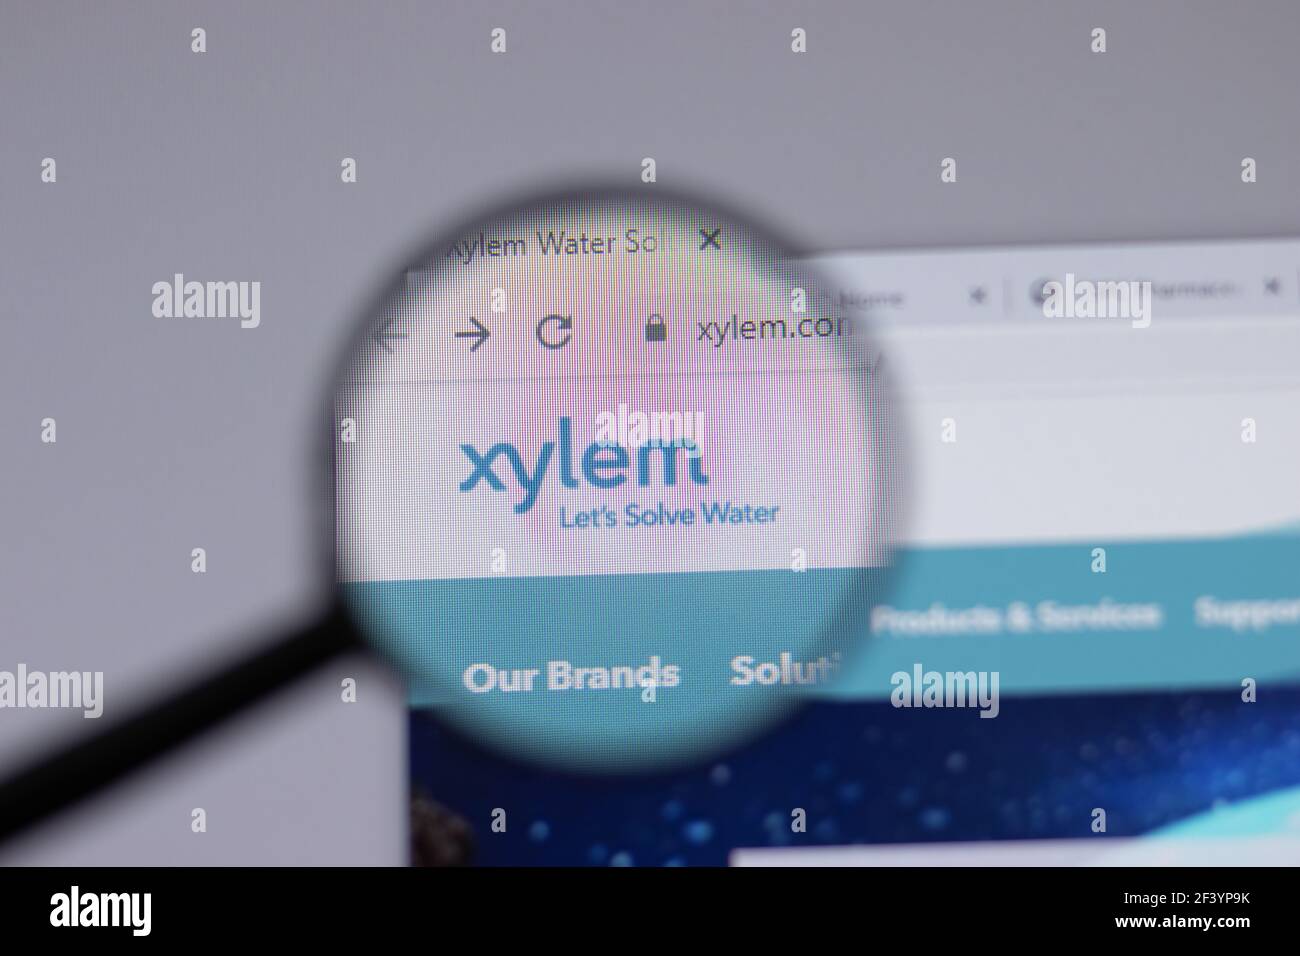 New York, USA - 18 Marzo 2021: Icona del logo della società Xylem sul sito, Editoriale illustrativo Foto Stock